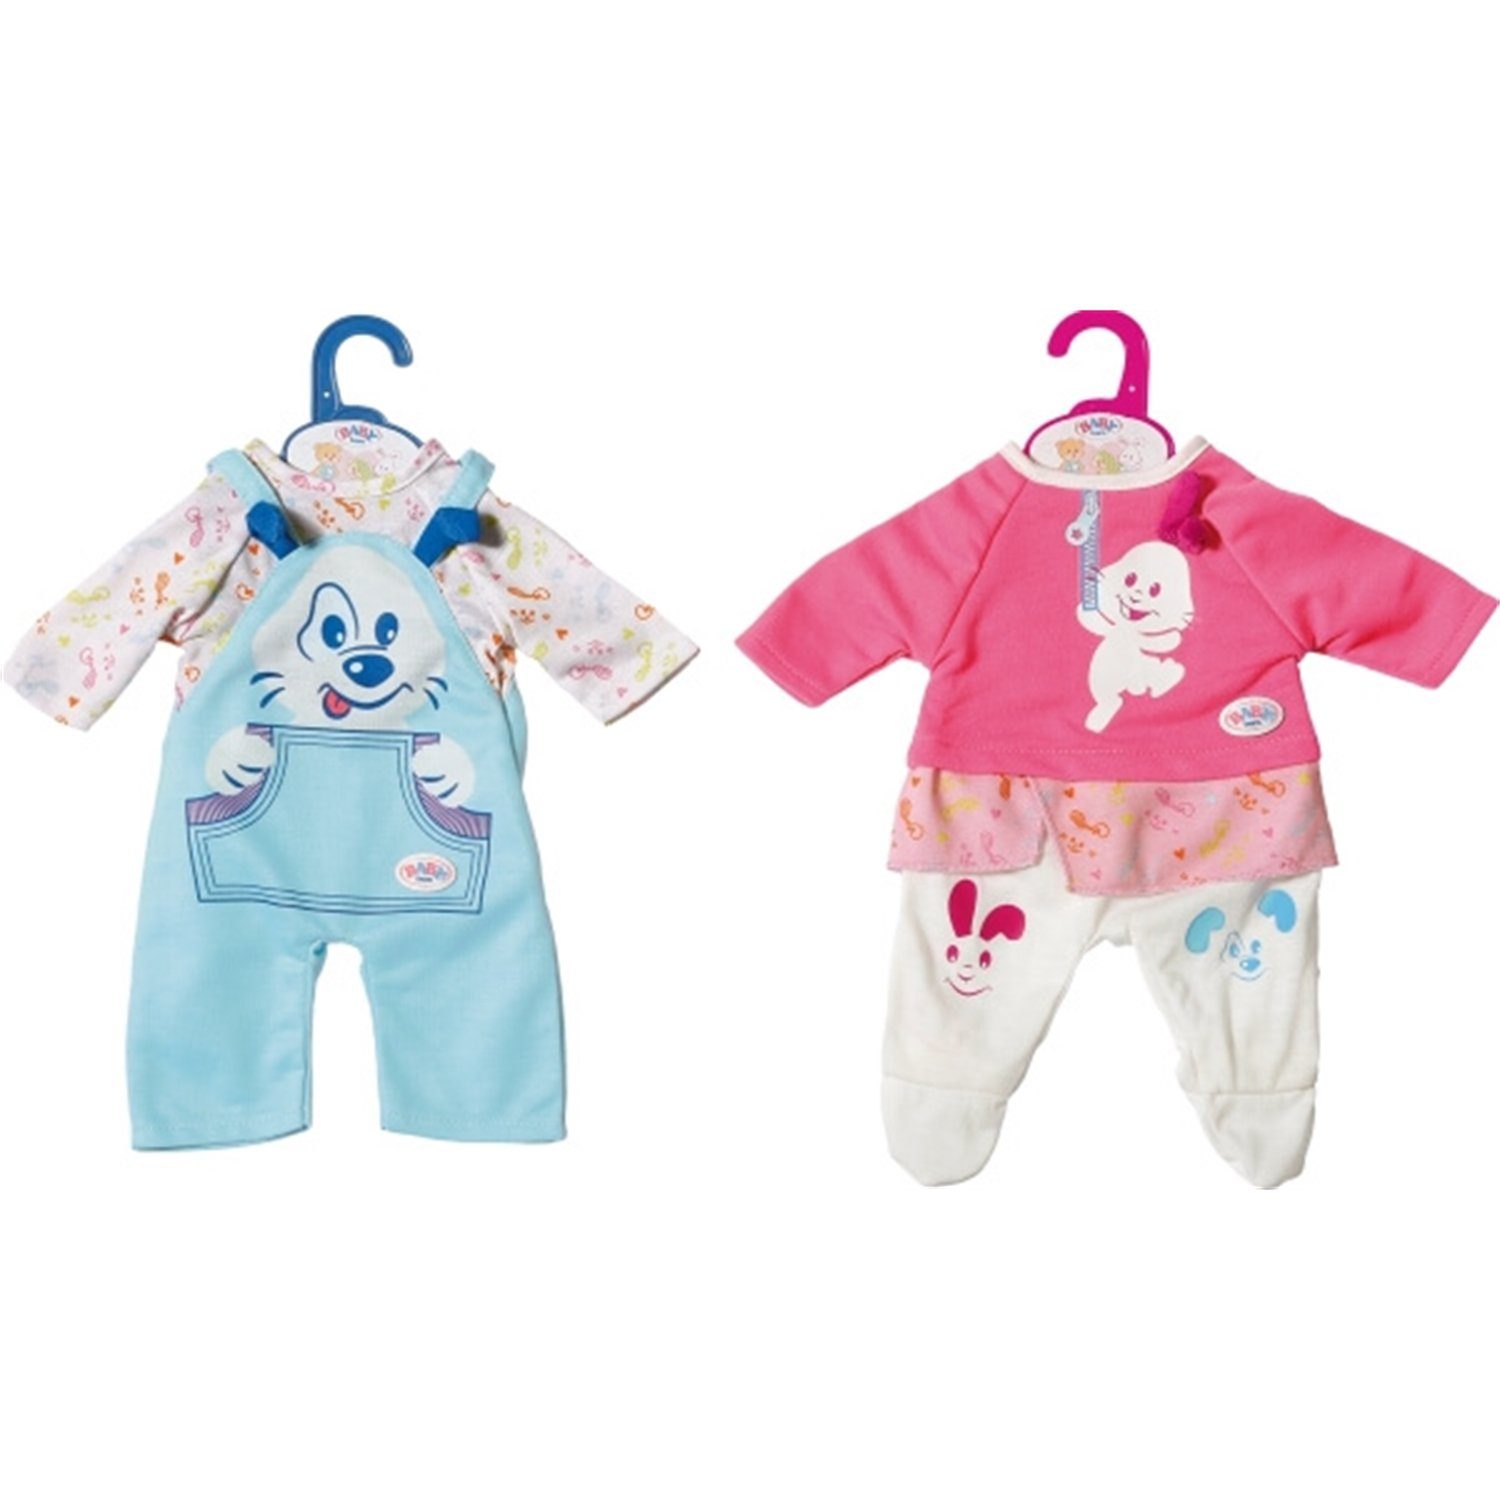 Zapf Creation® Puppenkleidung 827383 Baby Born Kleine Kleidung, sortiert